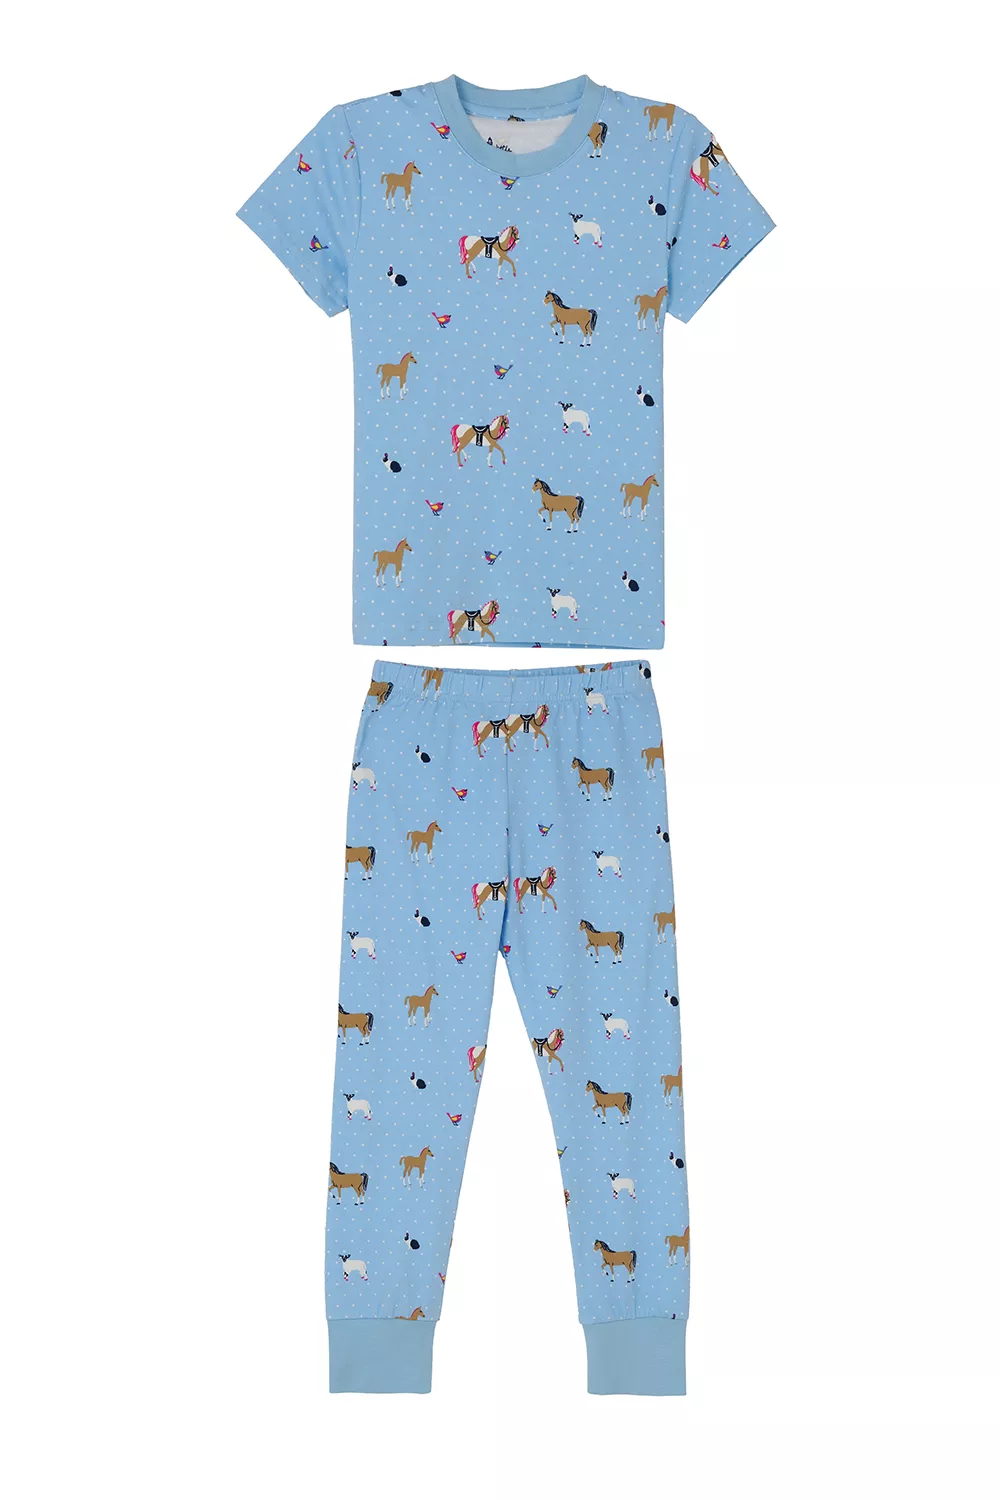 Girls Pyjamas Blue Animal Print 3-4yrs